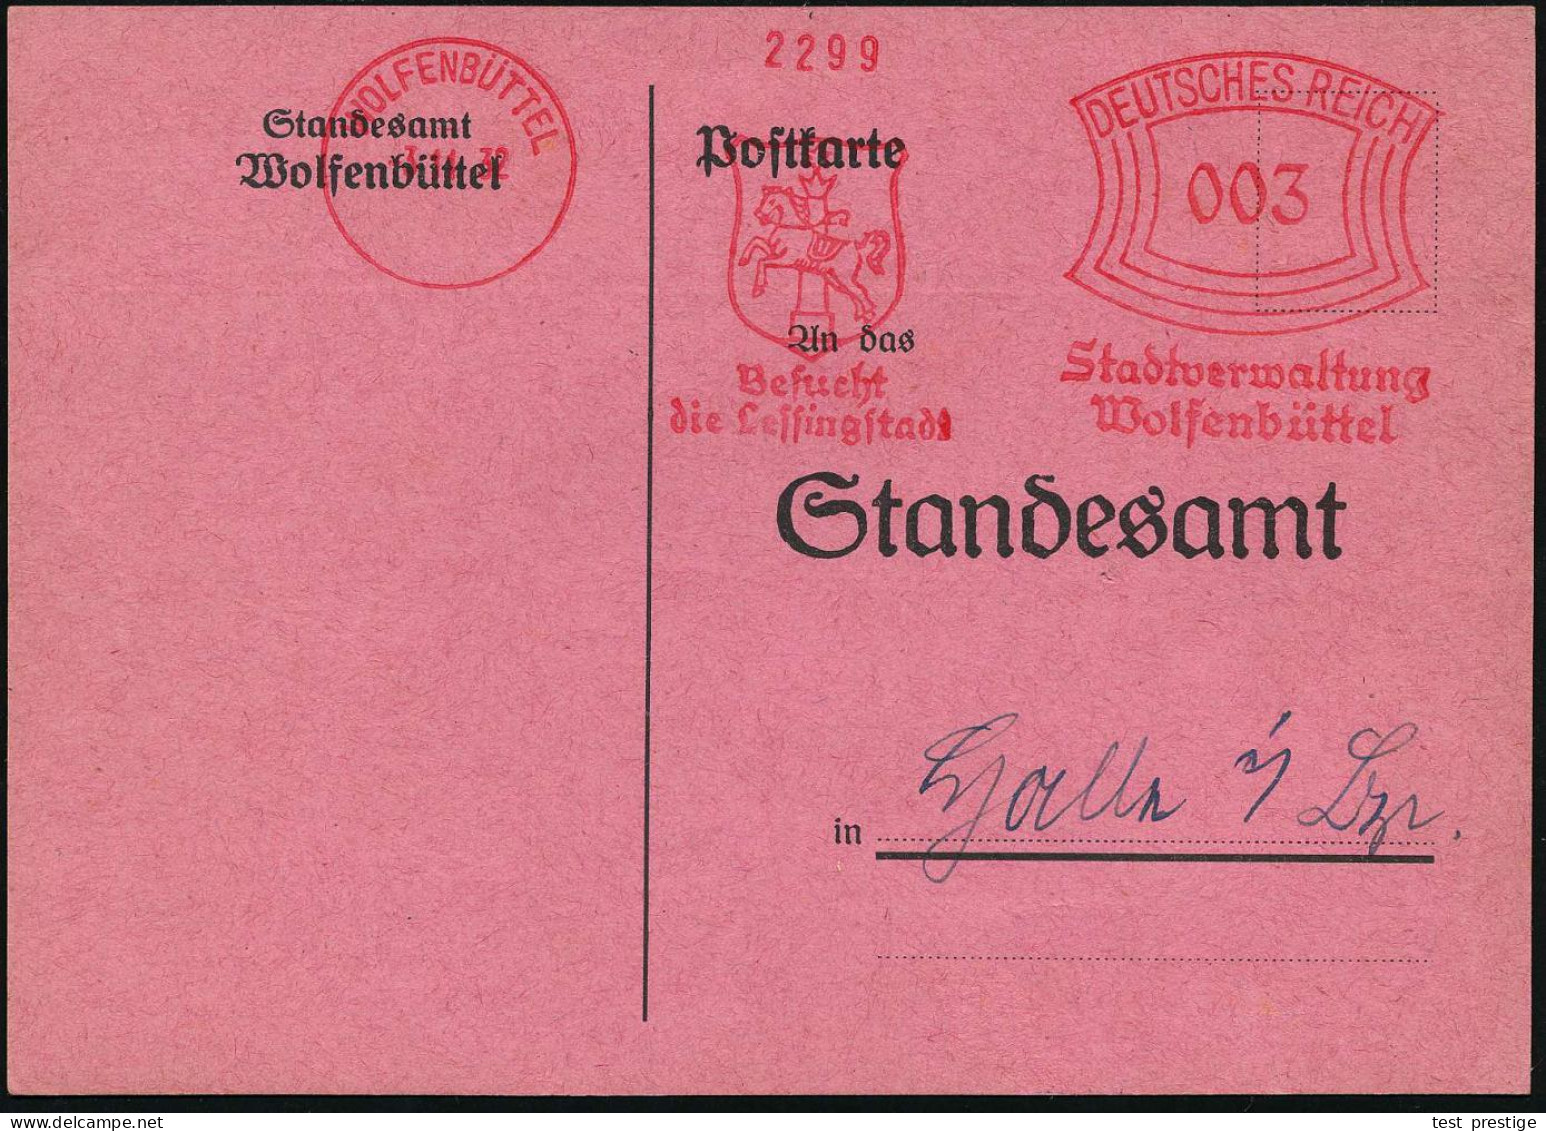 WOLFENBÜTTEL/ Besucht/ Die Lessingstadt/ Stadtverwaltung.. 1932 (3.11.) Seltener AFS Francotyp (Stadtwappen Mit Pferd) K - Theatre